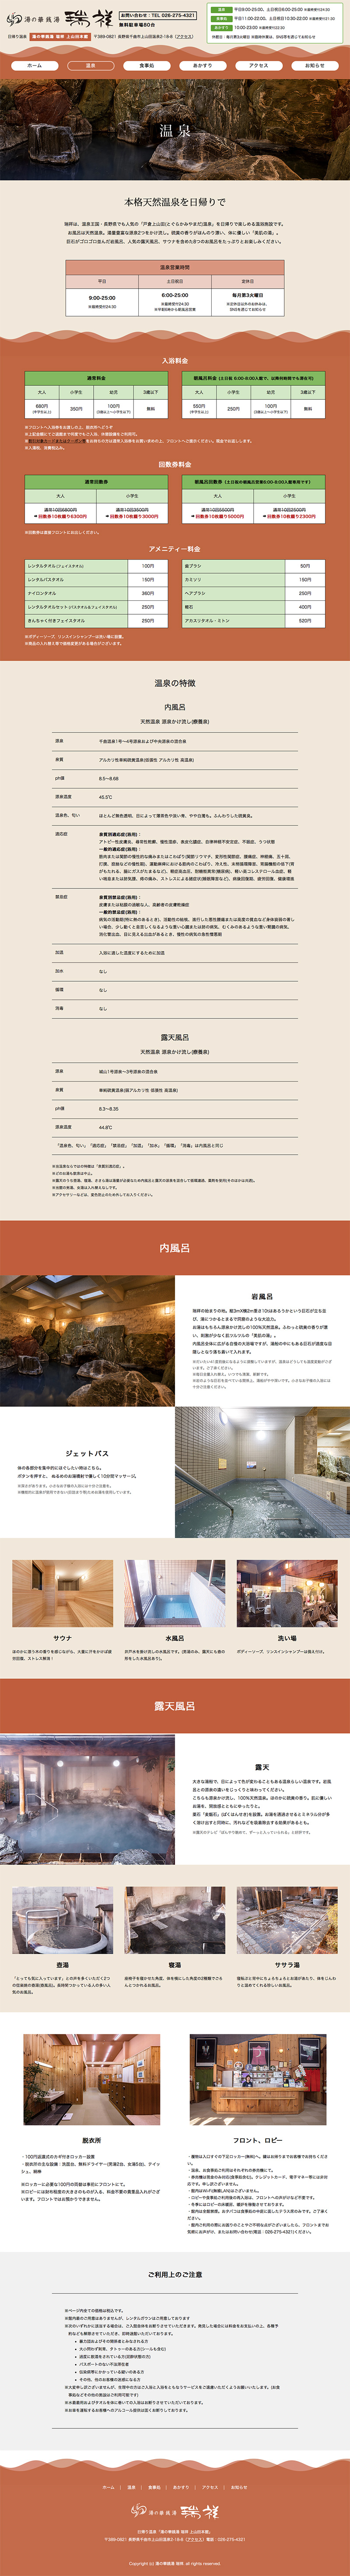 湯の華銭湯 瑞祥 上山田本館Webサイト 下層ページデザイン